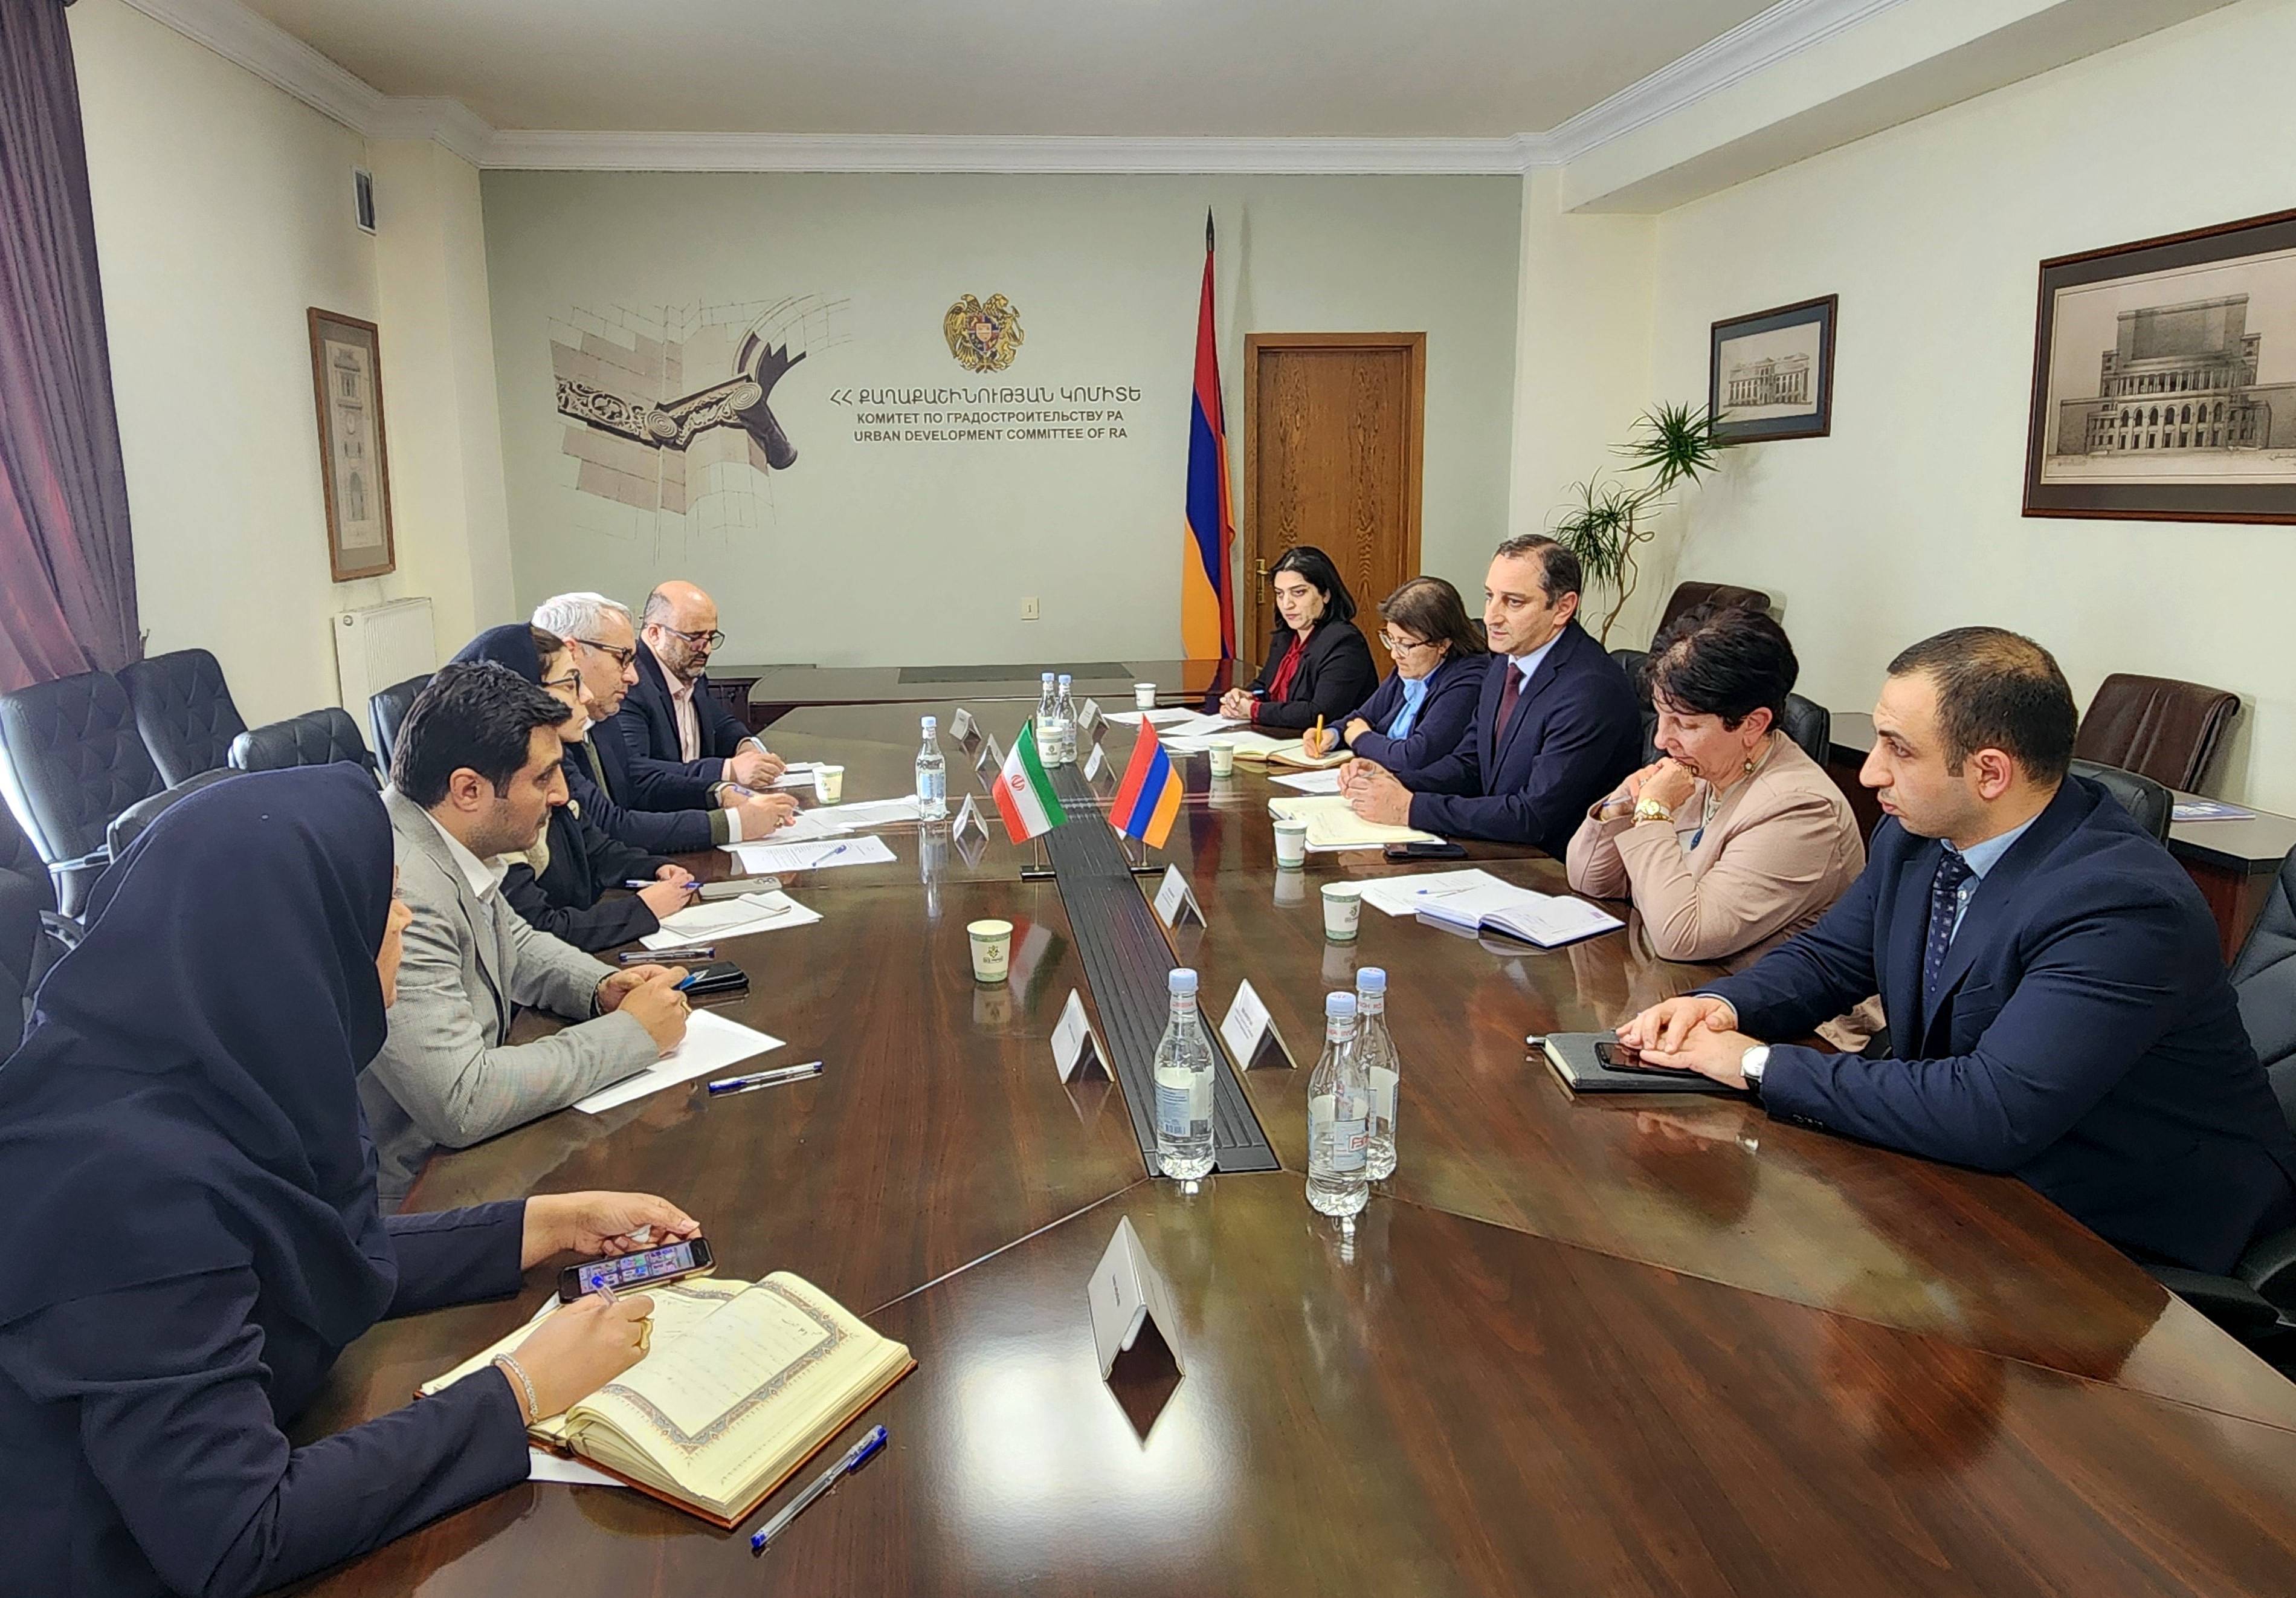 Քննարկվել են քաղաքաշինության ոլորտում հայ-իրանական համագործակցության հարցեր